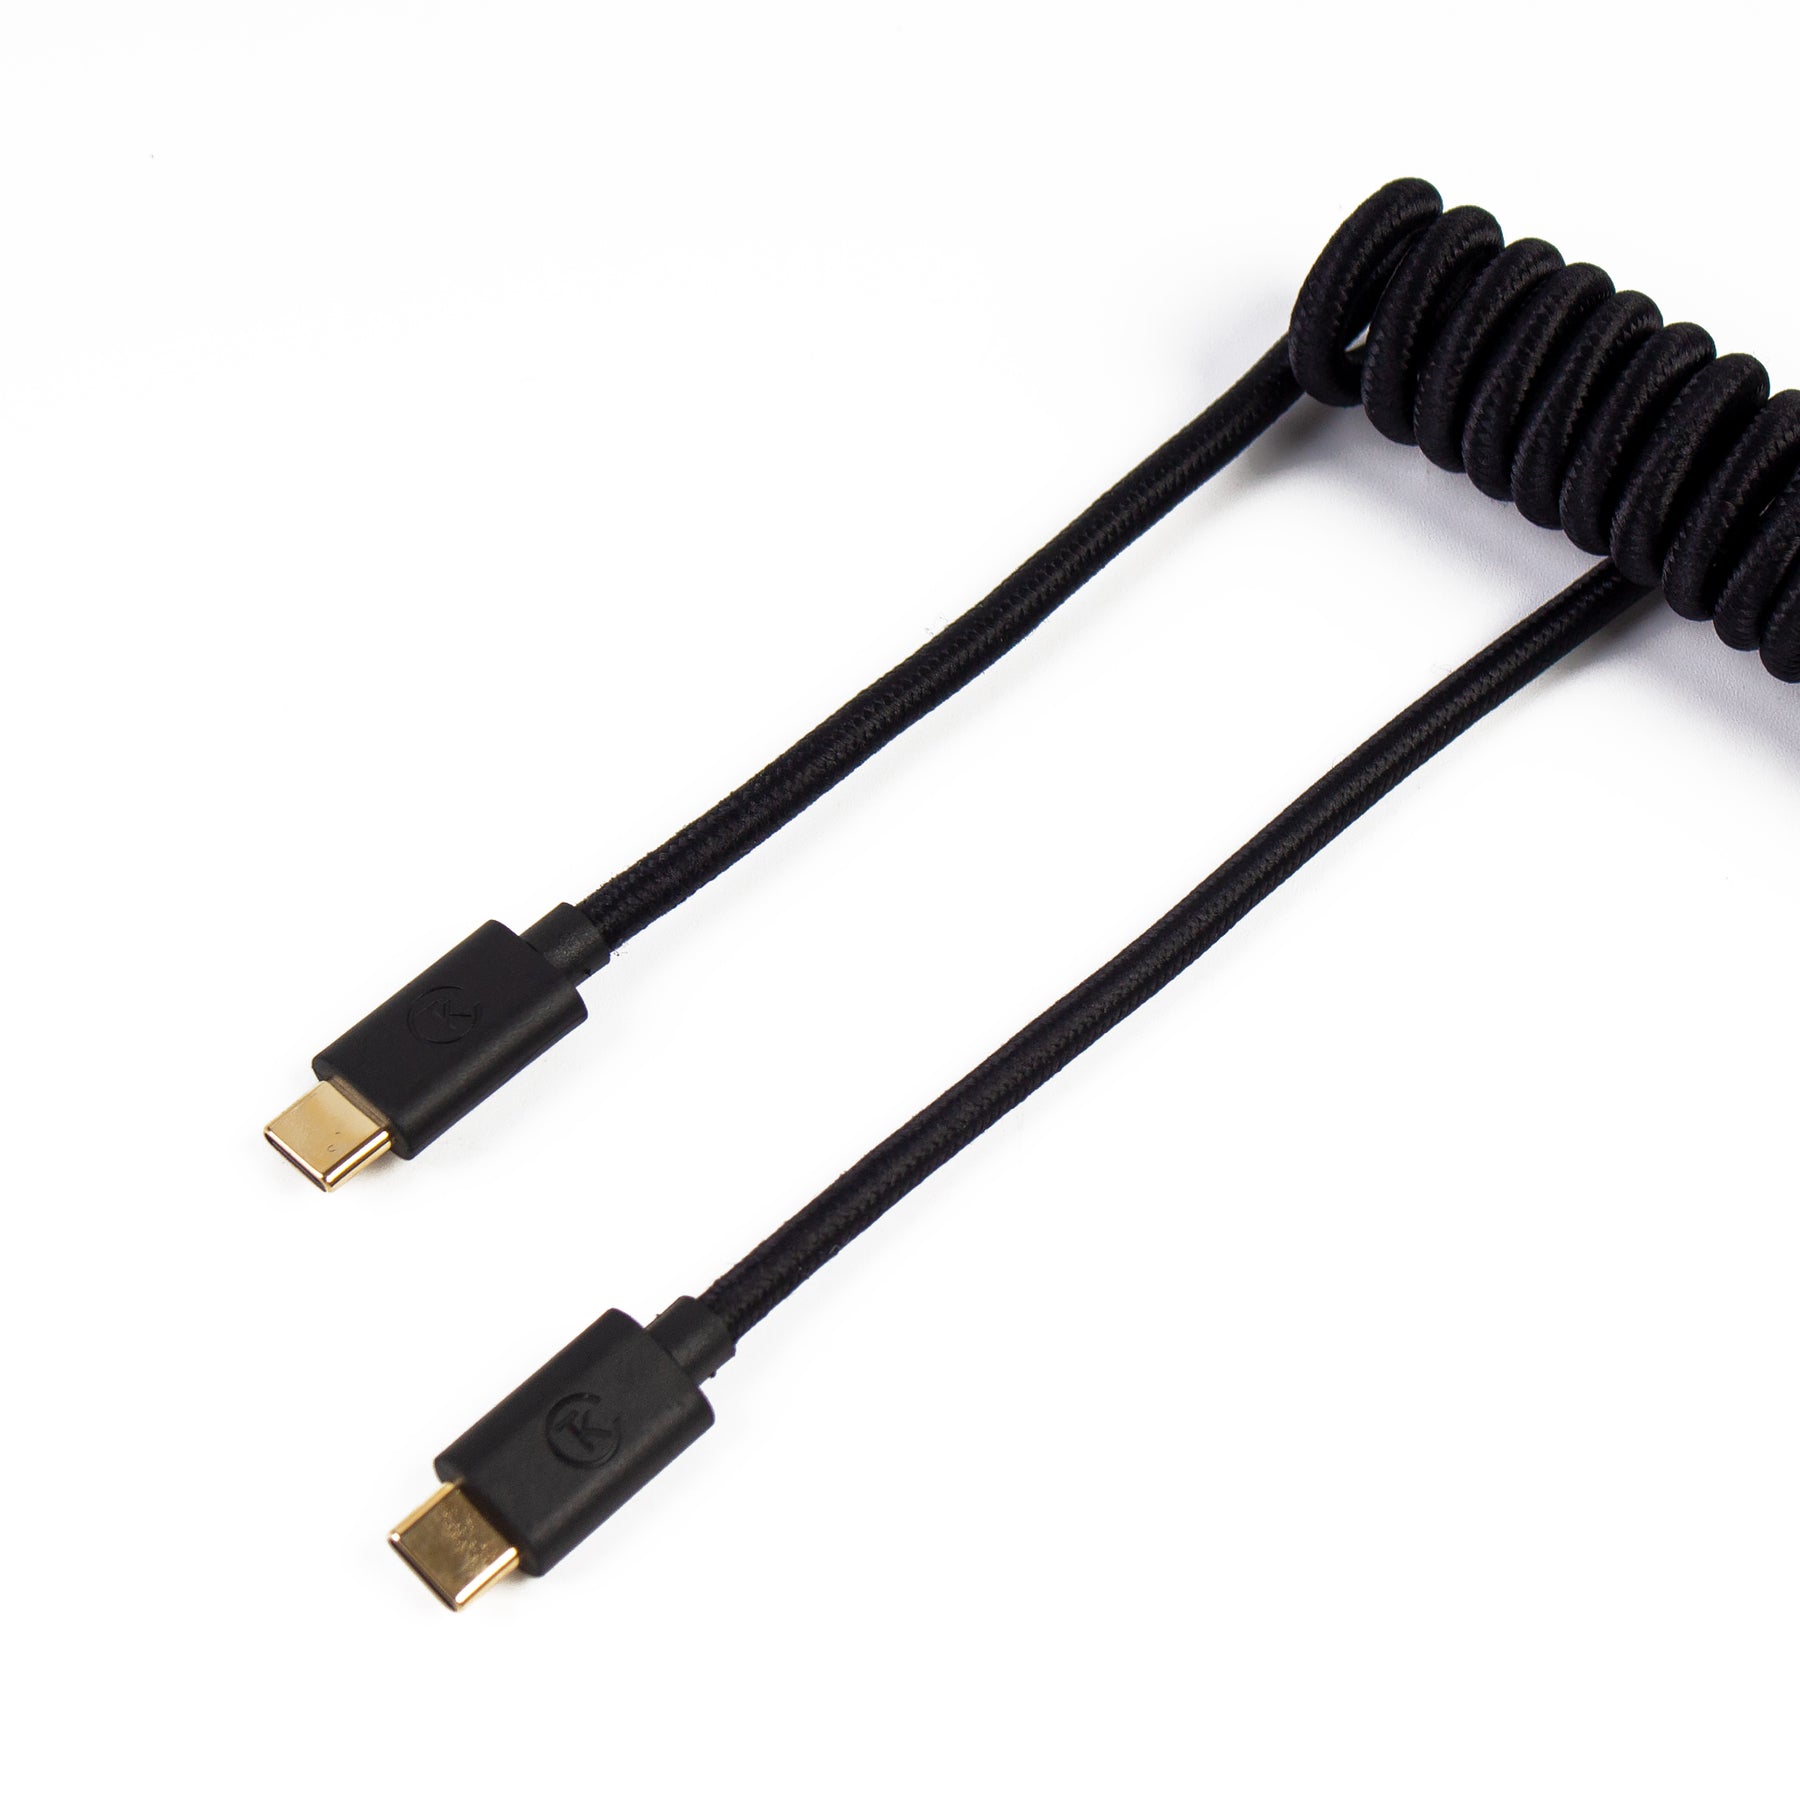 Câble Clavier Rainbow 100% Customisable ! 🌈 - Cables Hero